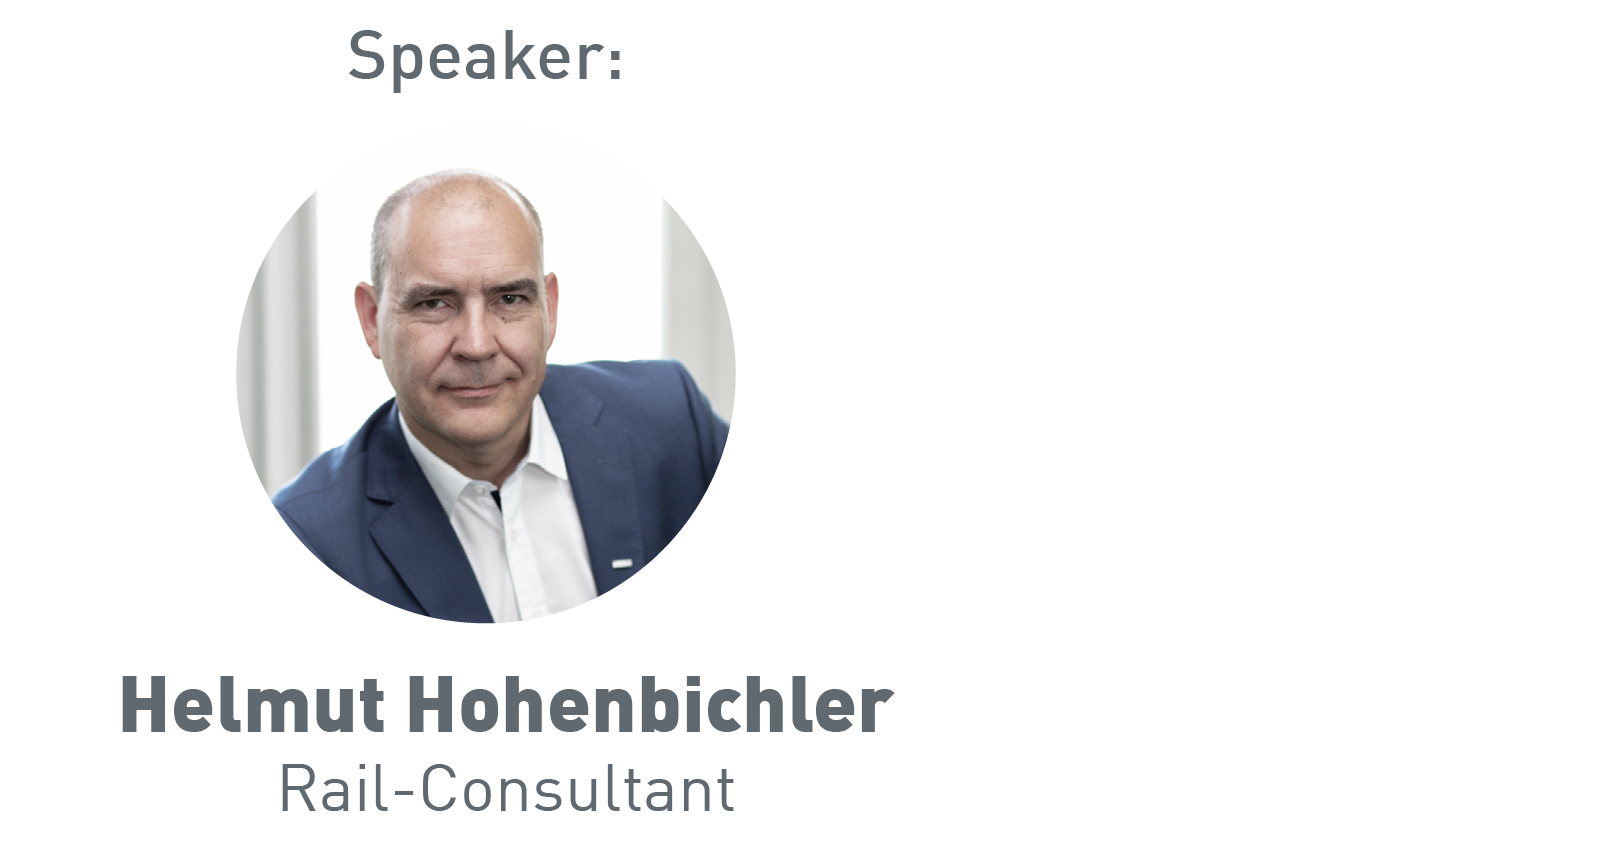 Helmut Hohenbichler, Rail Consultant